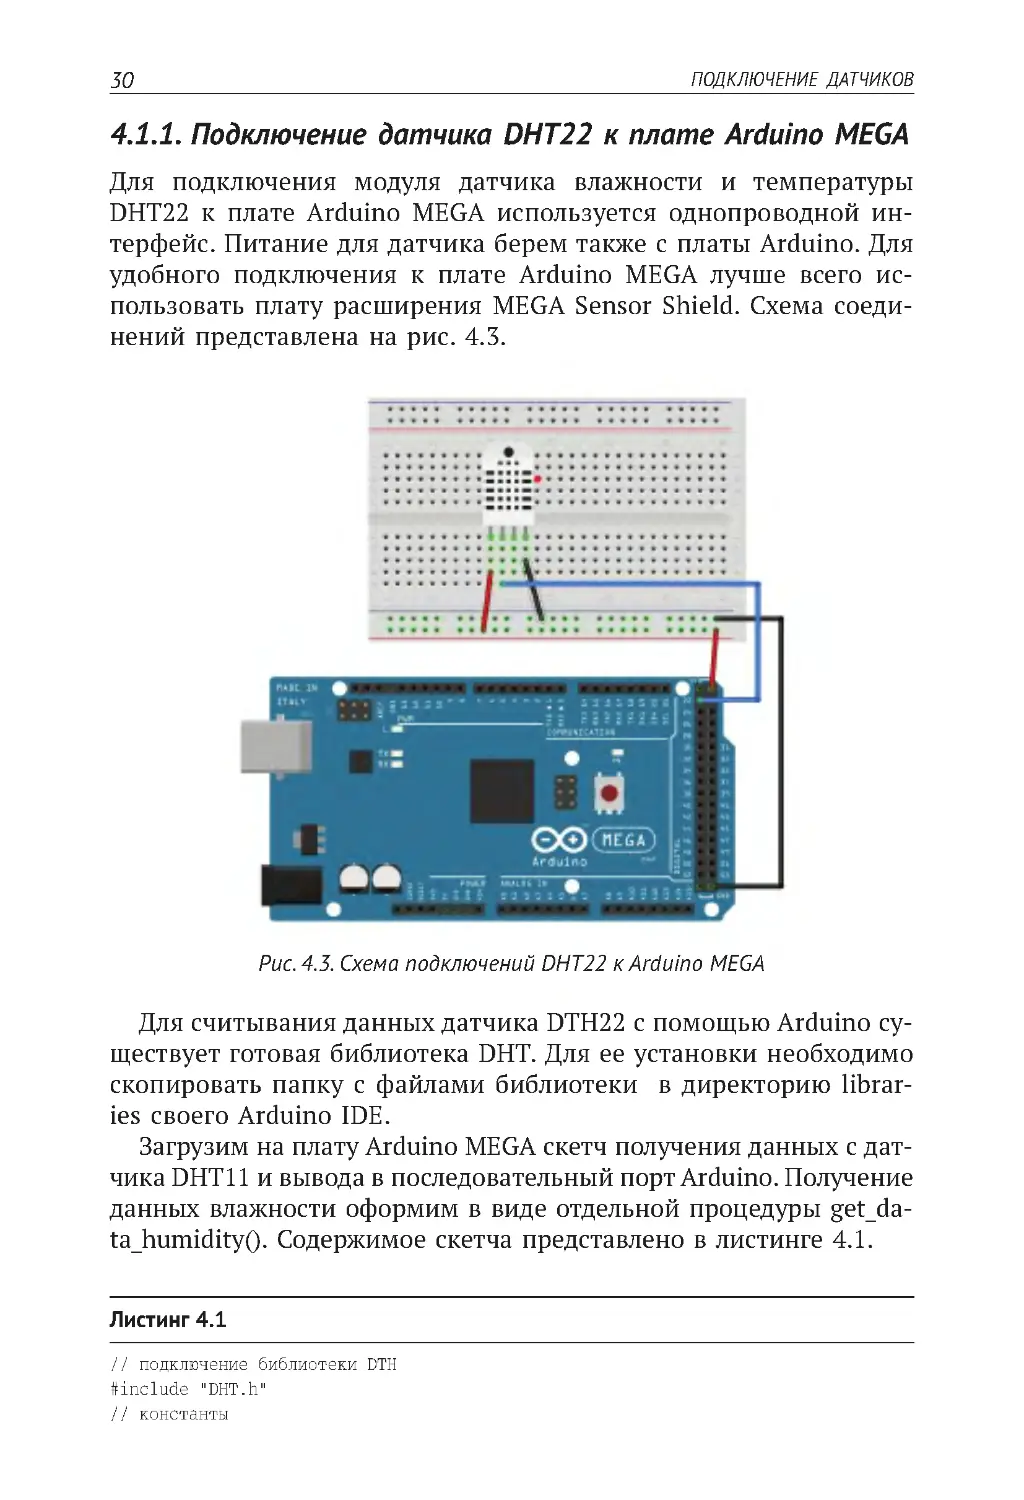 4.1.1. Подключение датчика DHT22 к плате Arduino MEGA